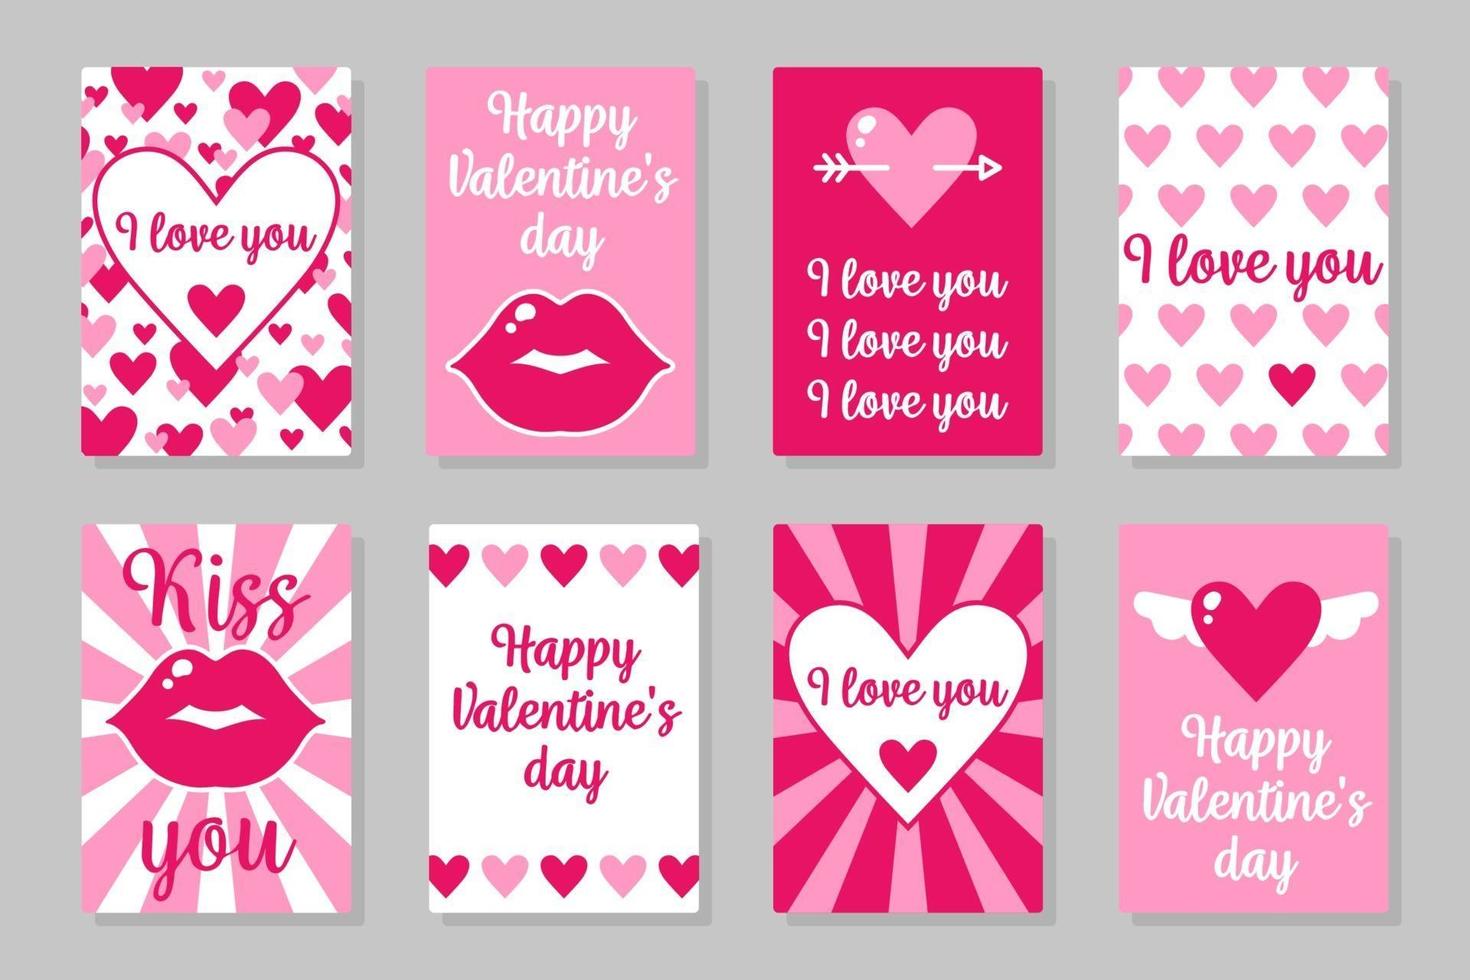 ensemble de cartes colorées roses, blanches et rouges pour la Saint-Valentin ou le mariage. design plat de vecteur isolé sur fond gris